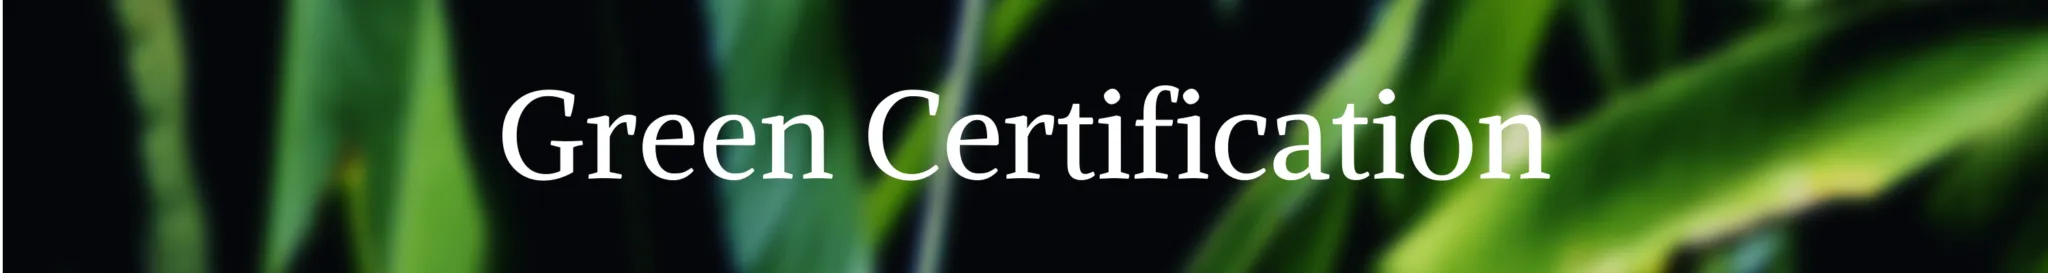 Green-Certification-Banner-2048x273